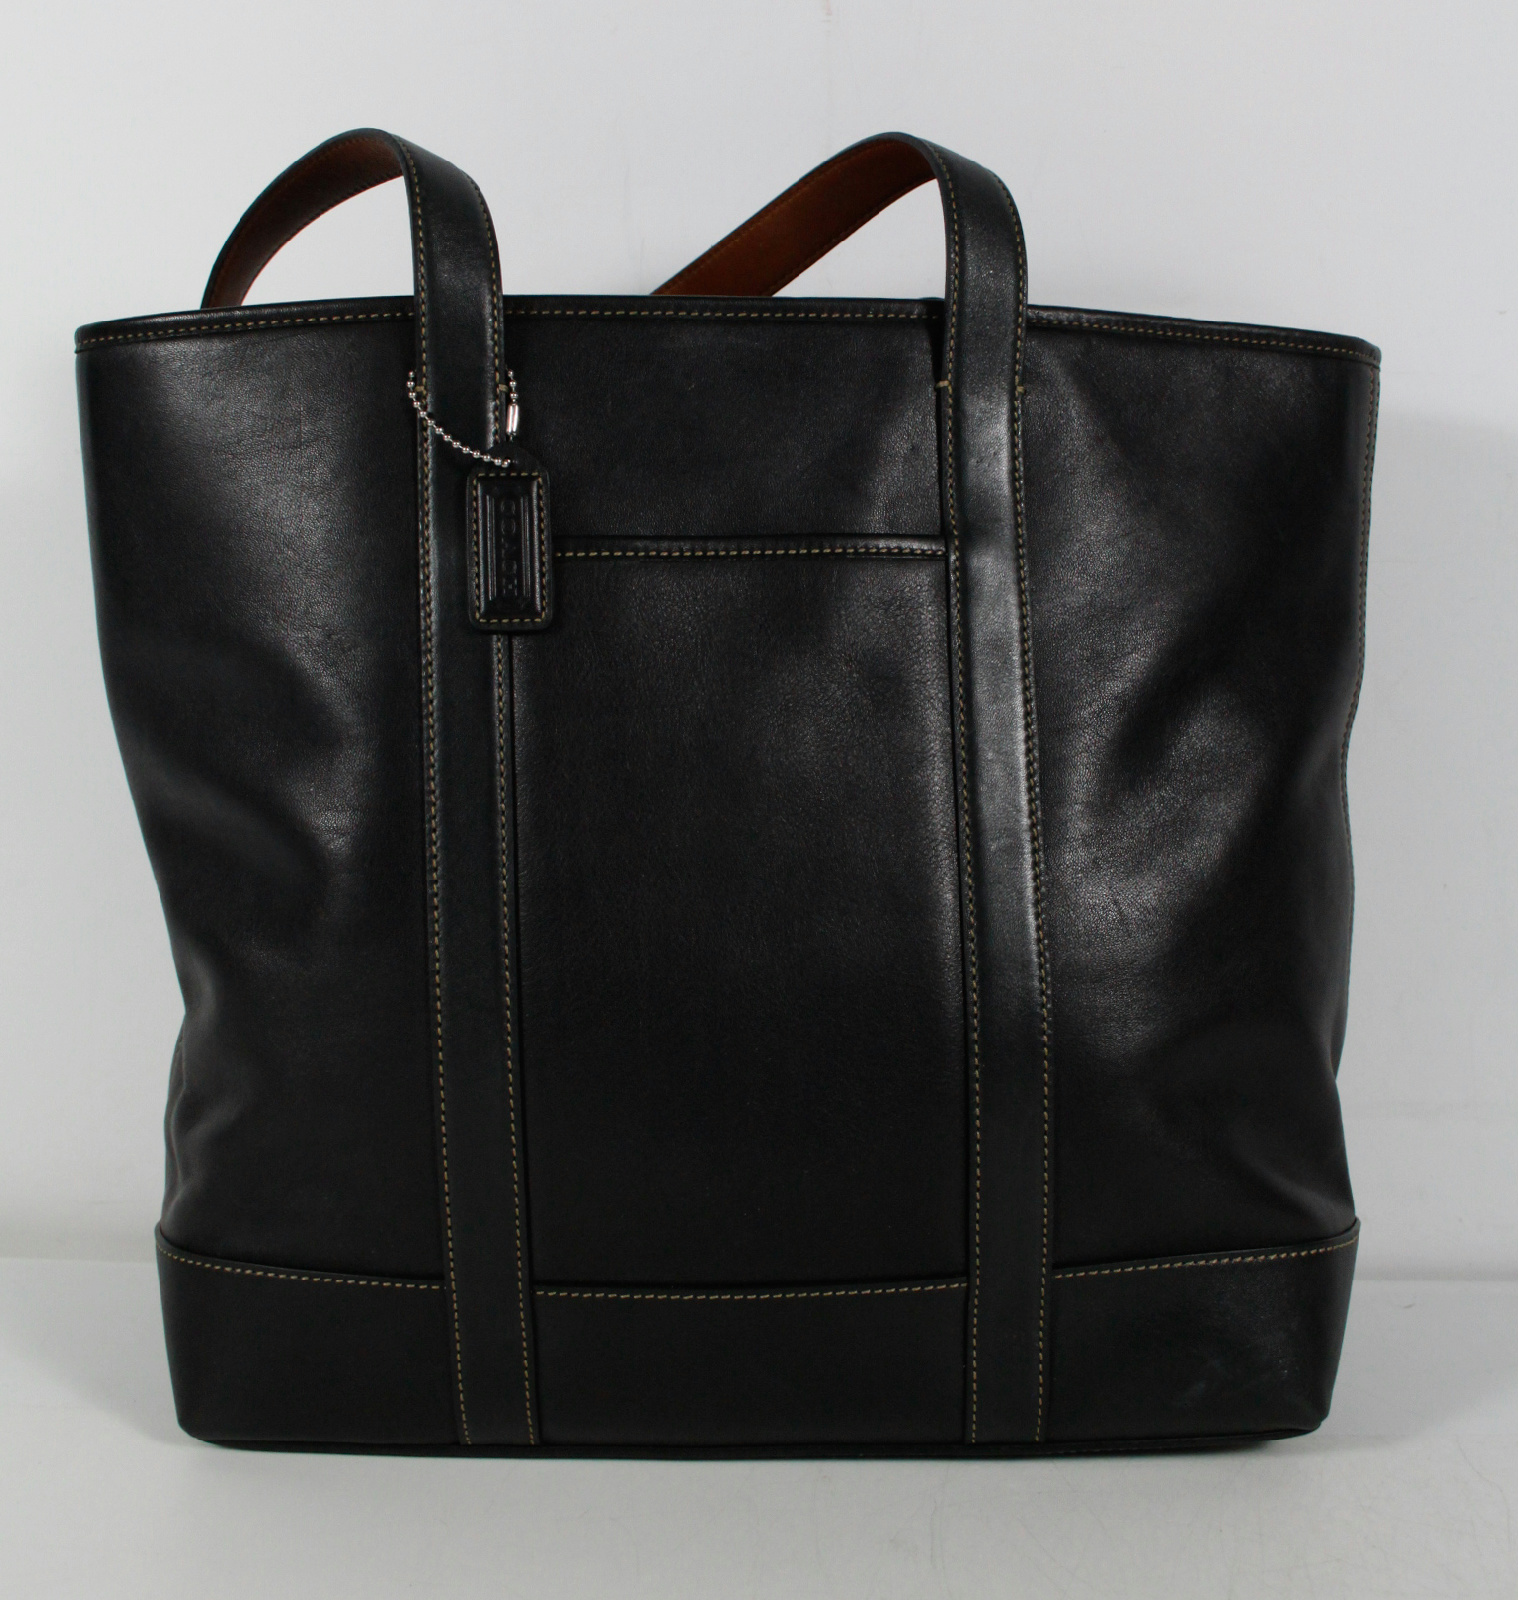 Coach 5188 Black Leather Large Tote Shoulder Bag Handbag Purse | eBay